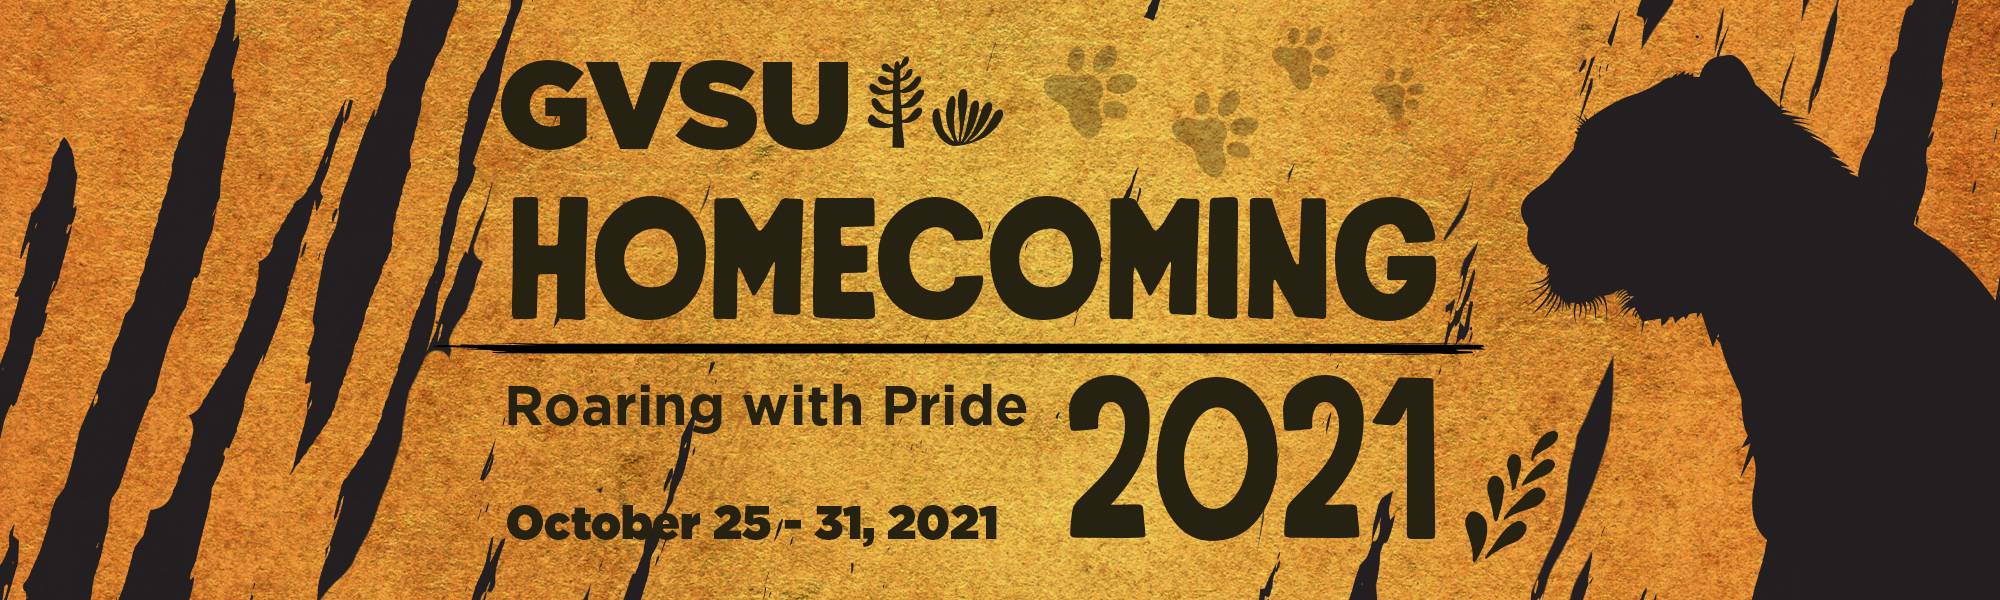 GVSU 2021 Homecoming Banner